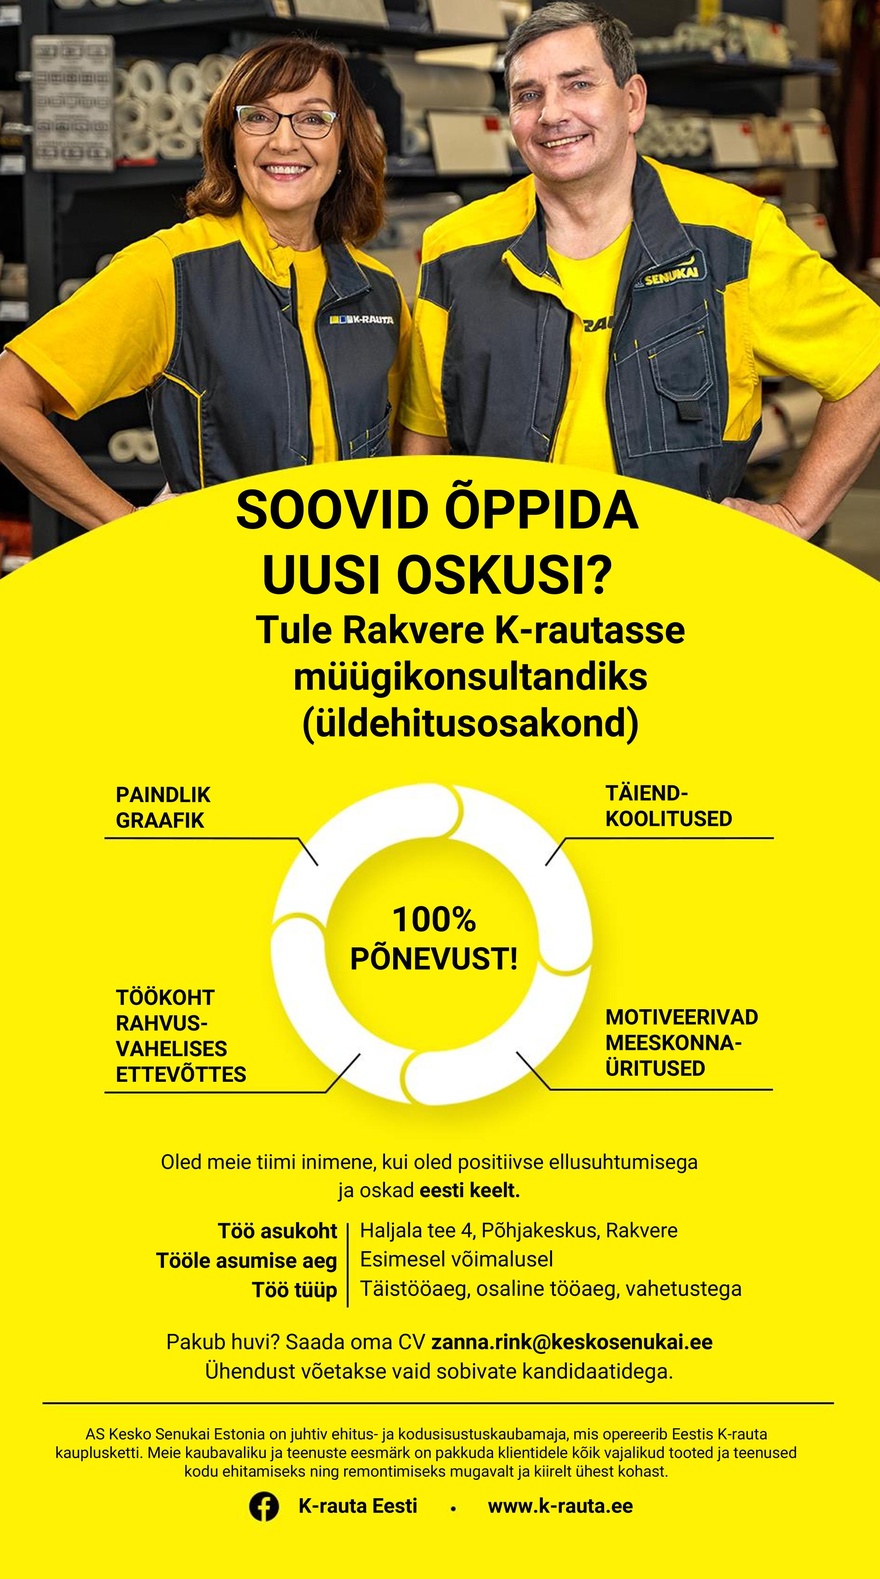 Kesko Senukai Estonia AS Müügikonsultant (üldehitus) Rakvere K-rauta